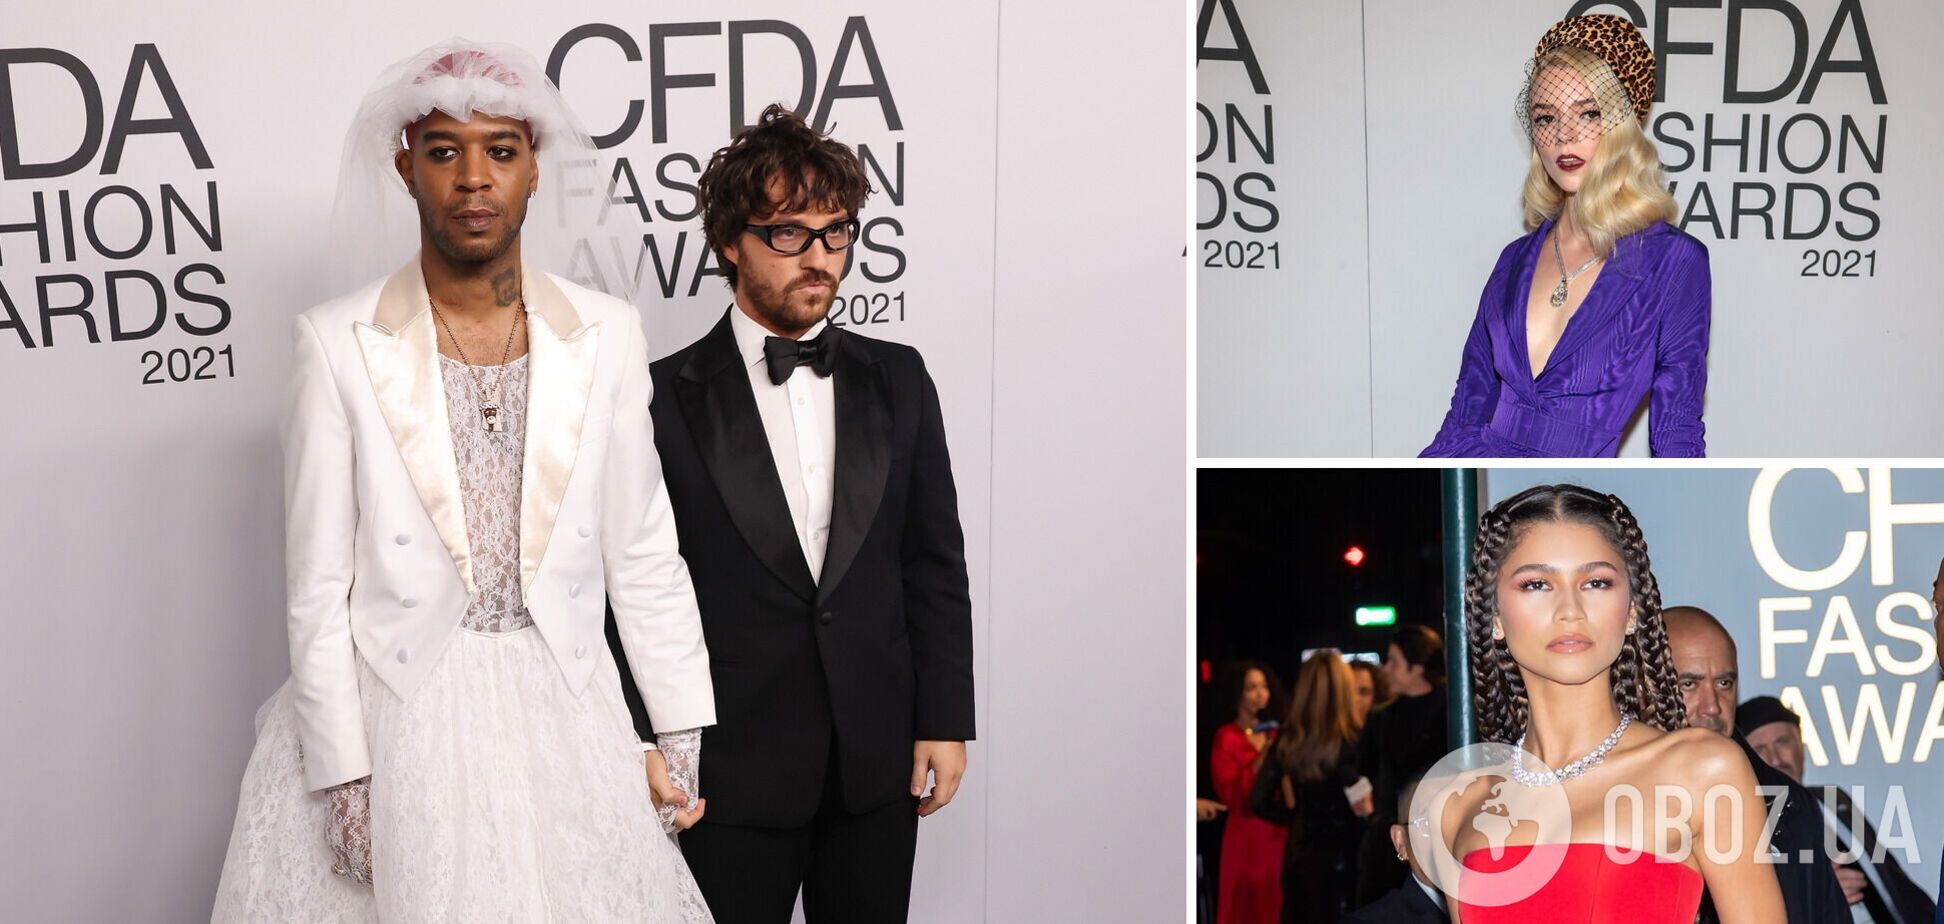 Зендая, Кара Делевинь и Дрю Бэрримор восхитили нарядами на премии CFDA Fashion Awards. Фото